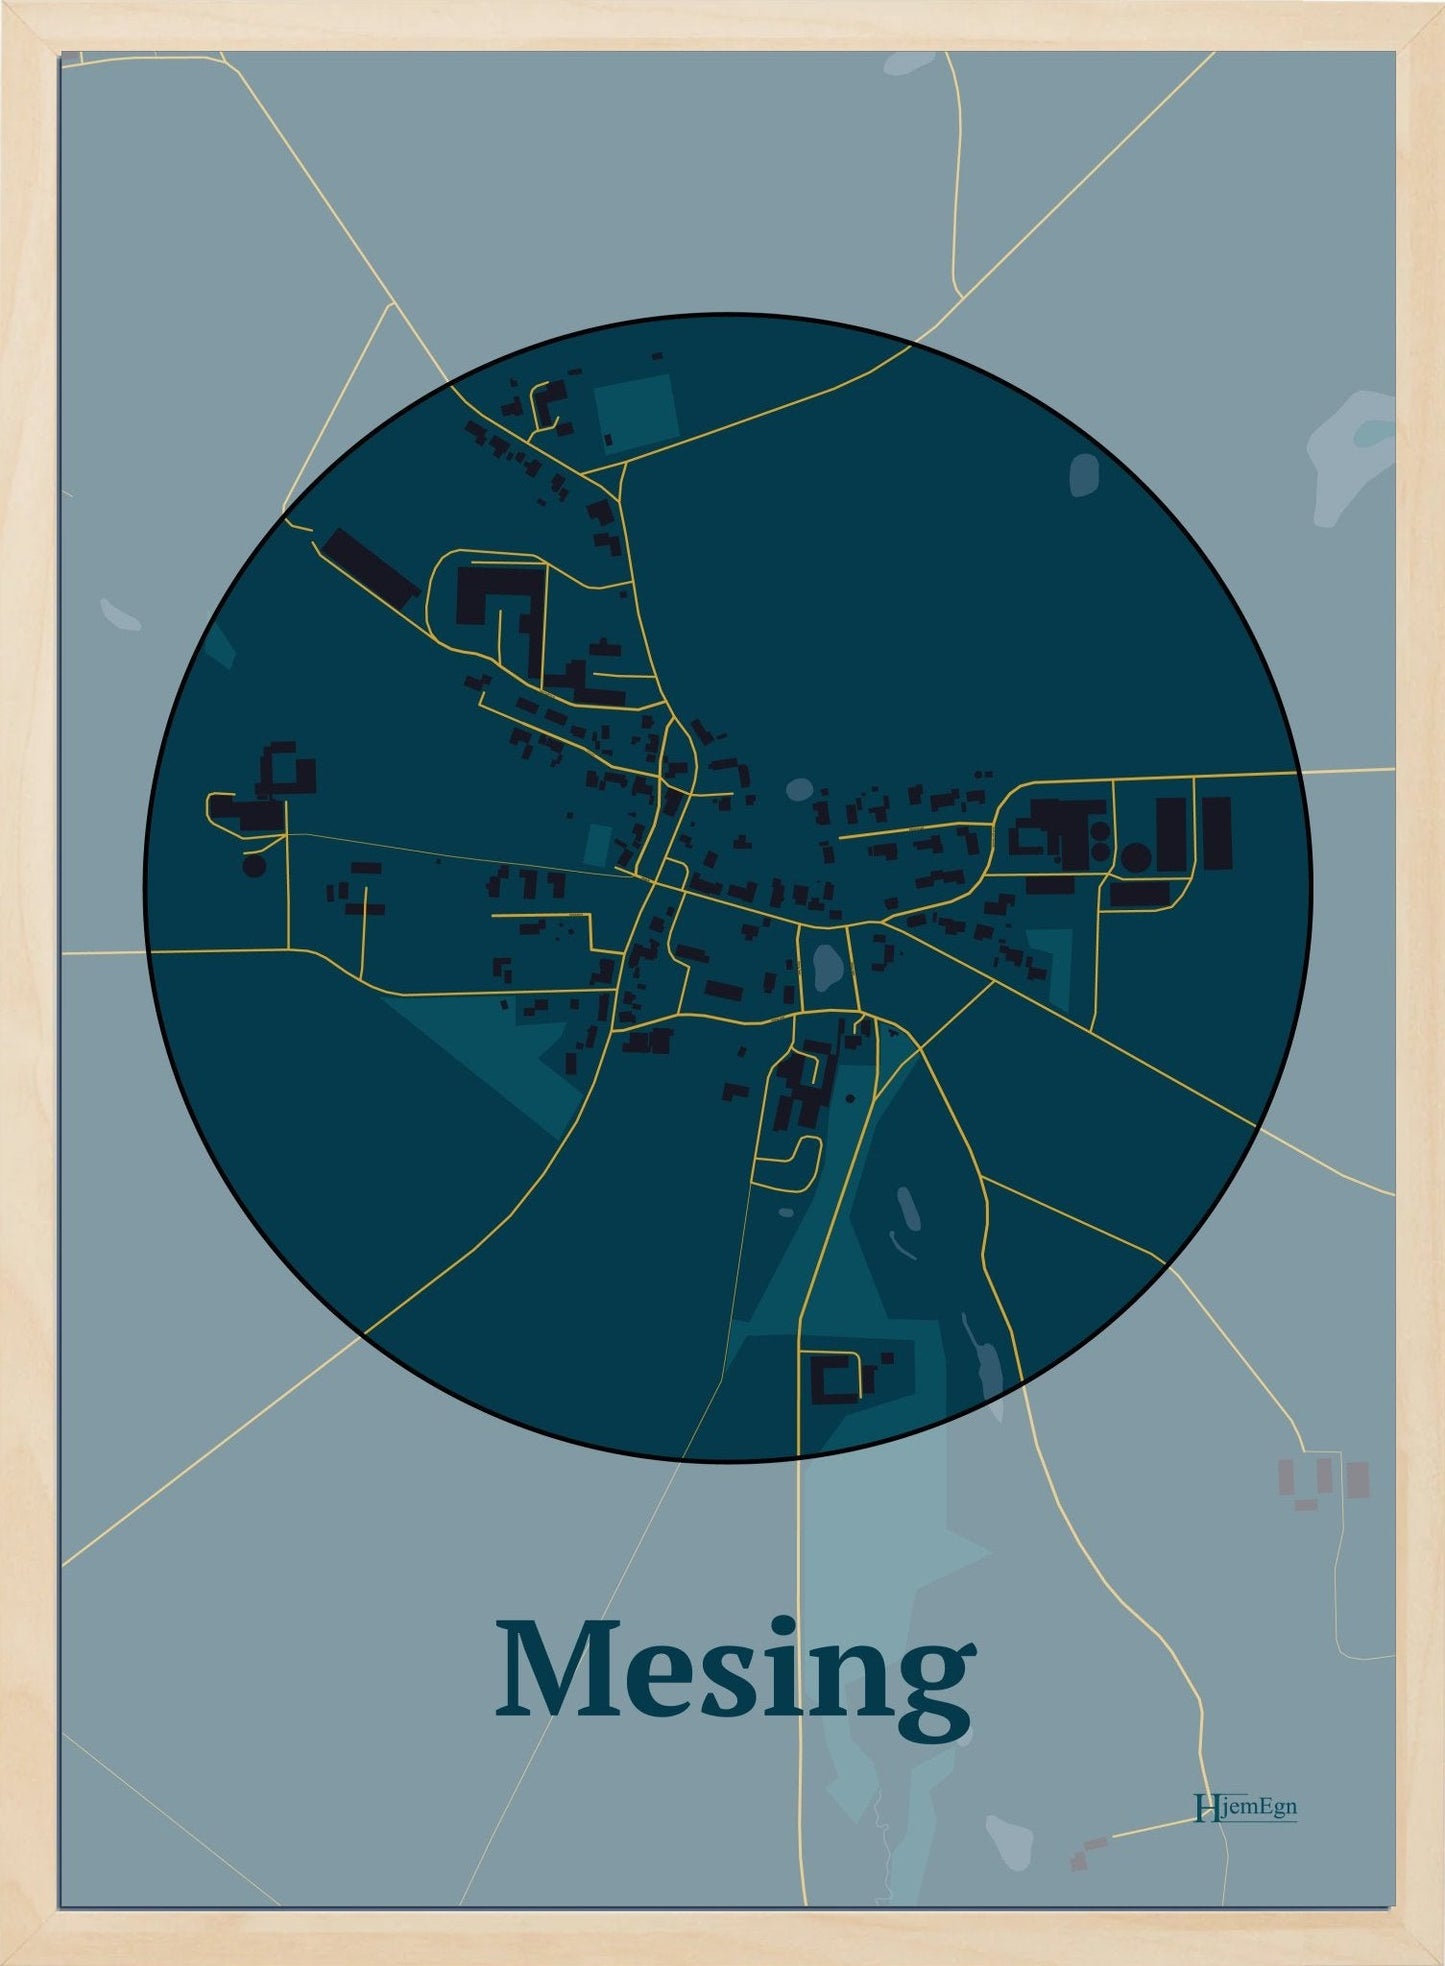 Mesing plakat i farve mørk blå og HjemEgn.dk design firkantet. Design bykort for Mesing